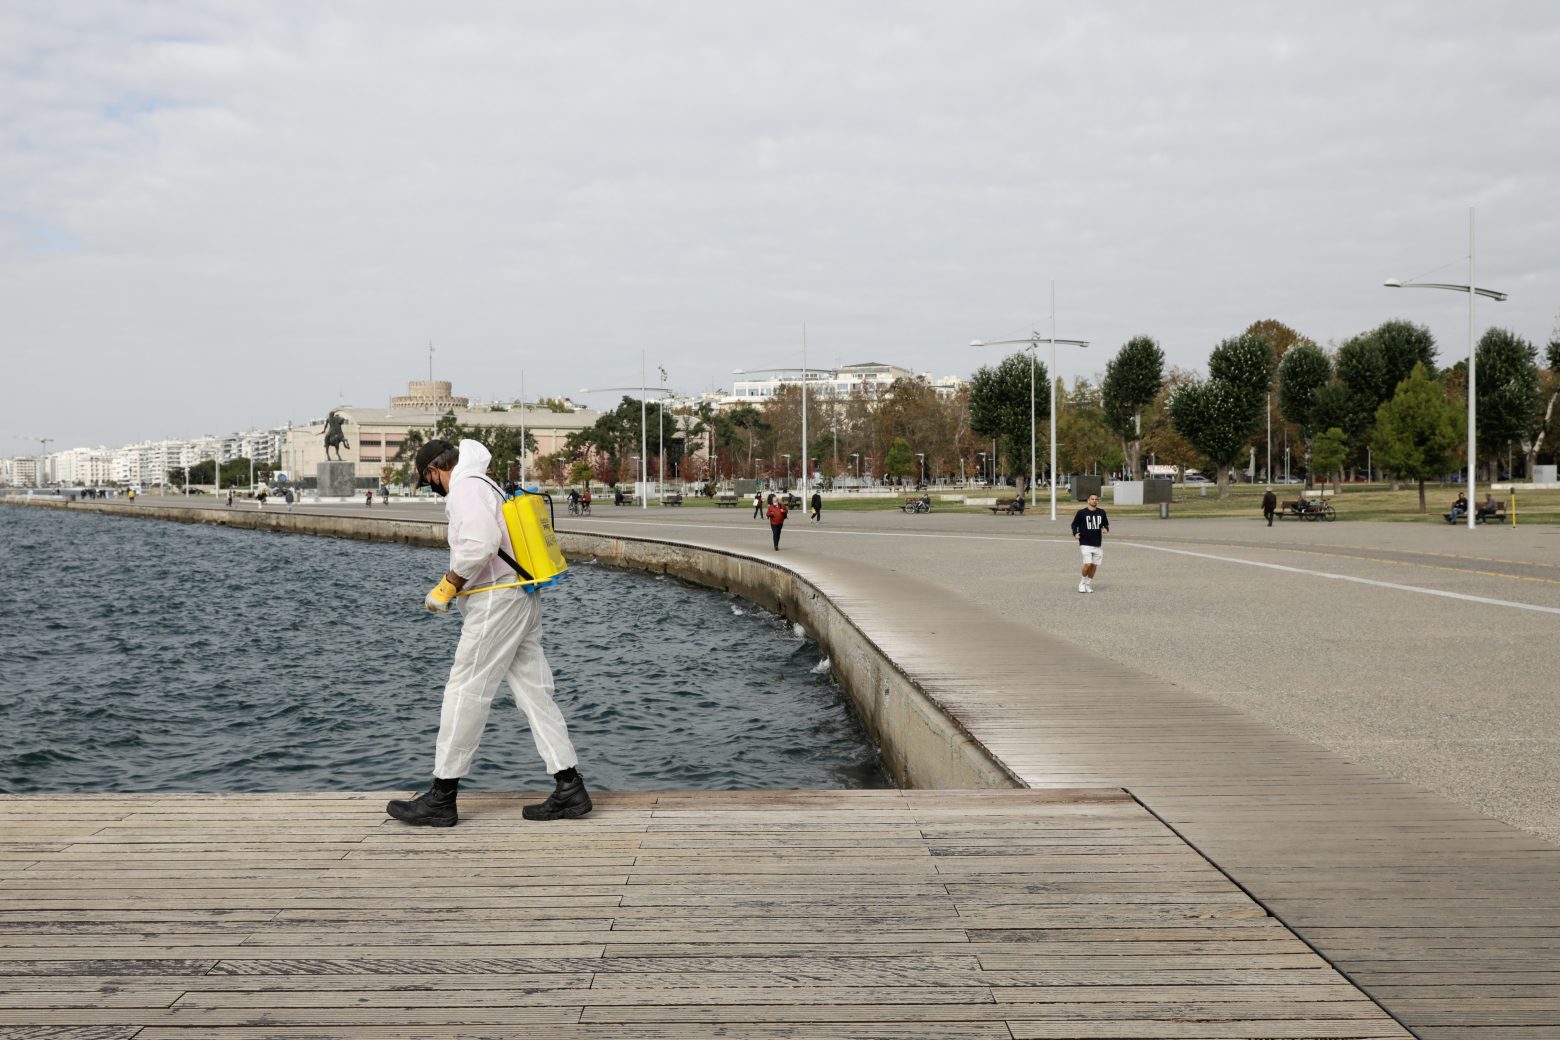 Θεσσαλονίκη - Σημαντική η διασπορά του κοροναϊού στην κοινότητα - Το επιβεβαιώνουν οι μετρήσεις στα λύματα